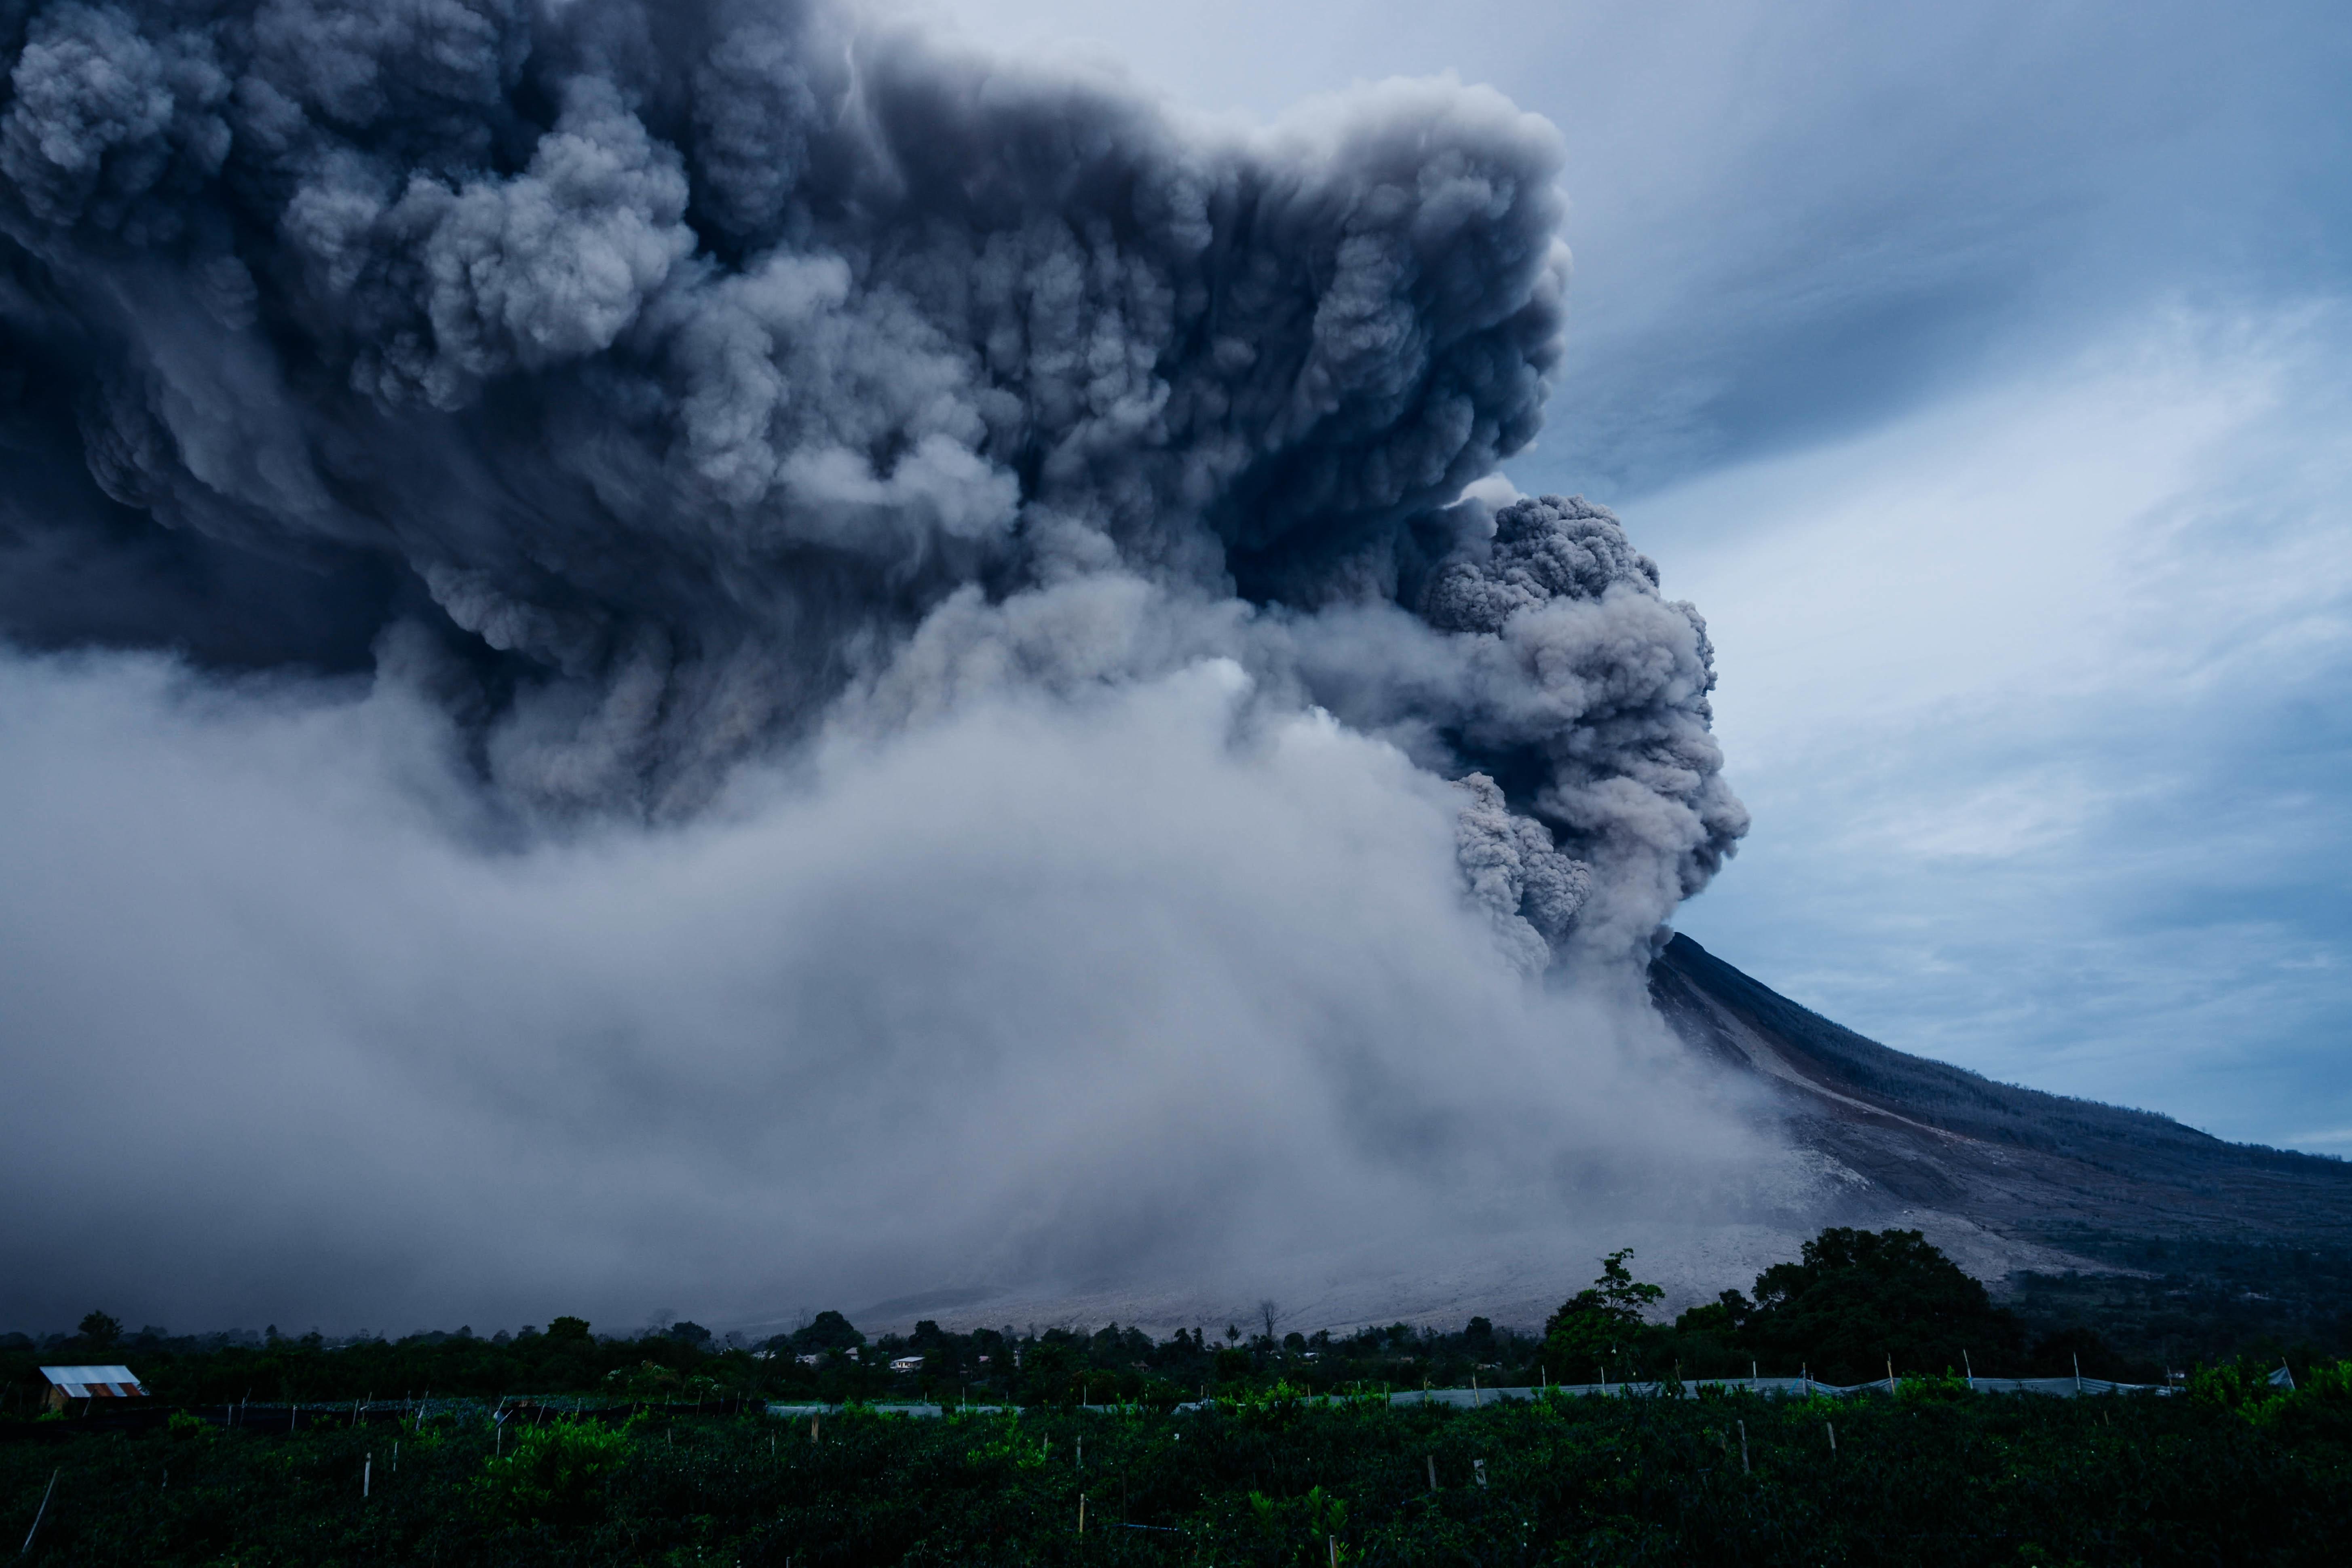 Nature disasters. Извержение вулкана Шивелуч. Извержение вулкана Тонга. Вулкан Шивелуч на Камчатке. Шивелуч вулкан извержение последнее.